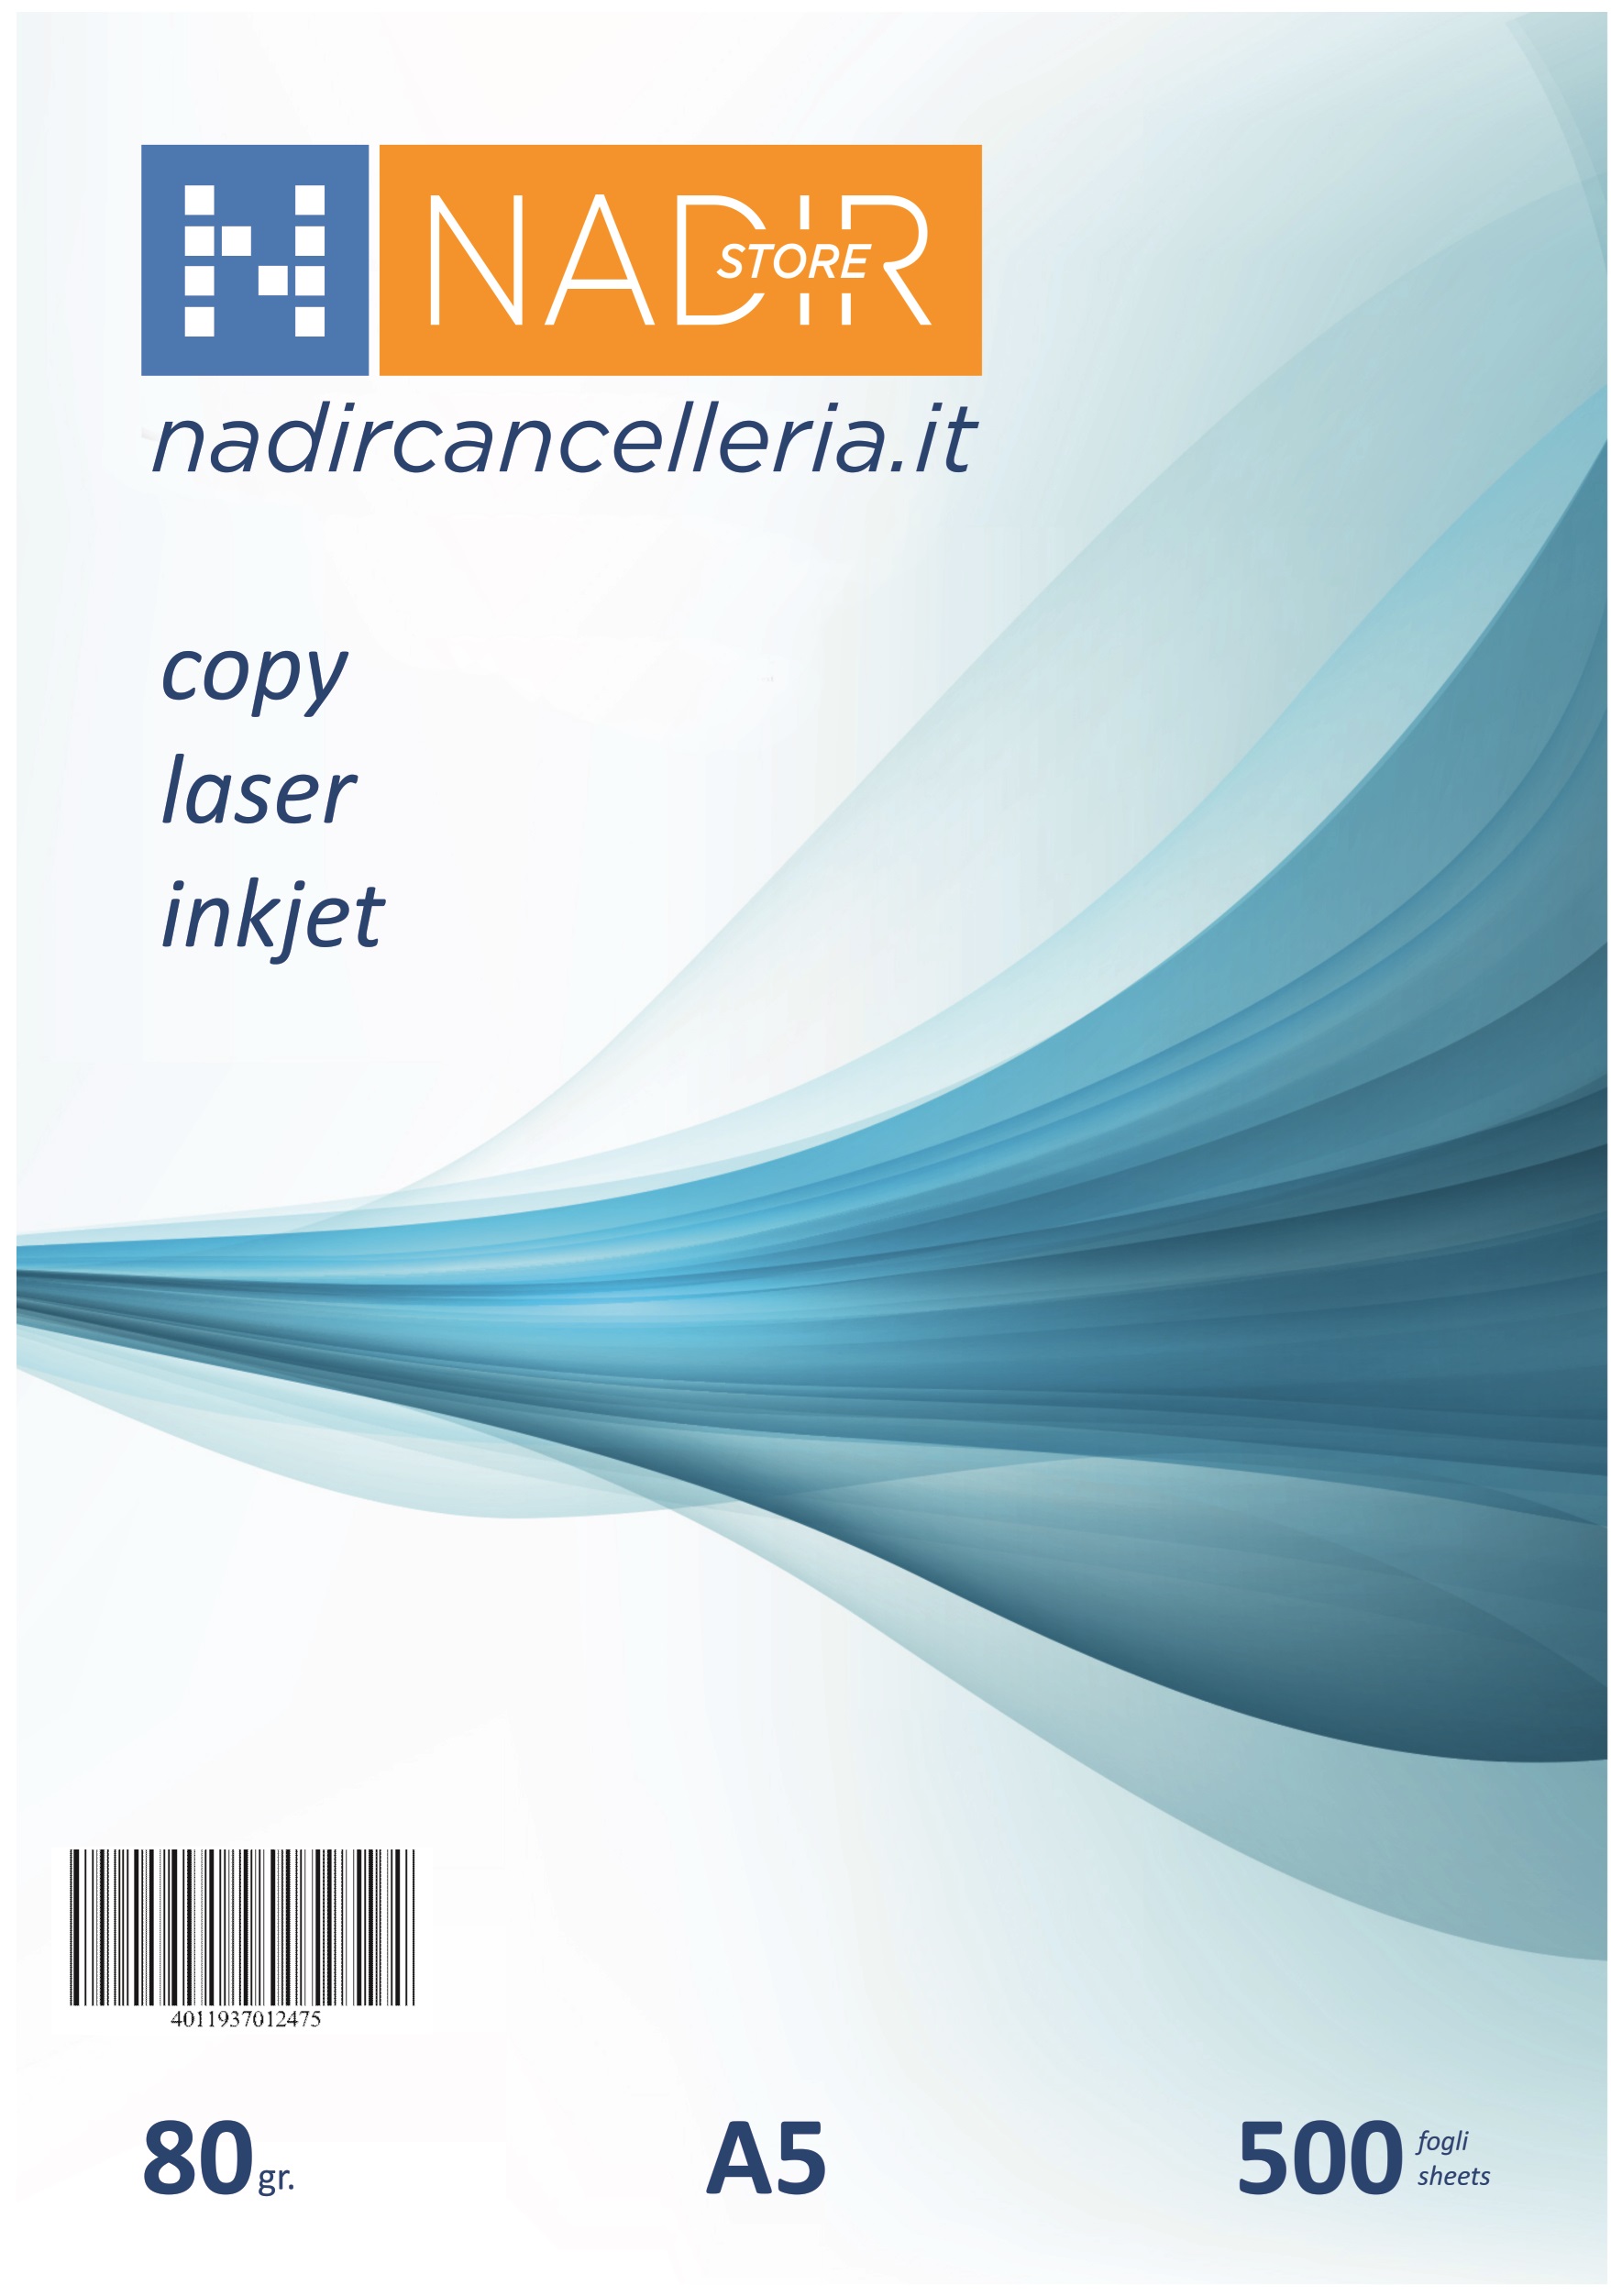 Carta per fotocopie a5 (1/2 di foglio) 80g 500ff - Nadir Cancelleria